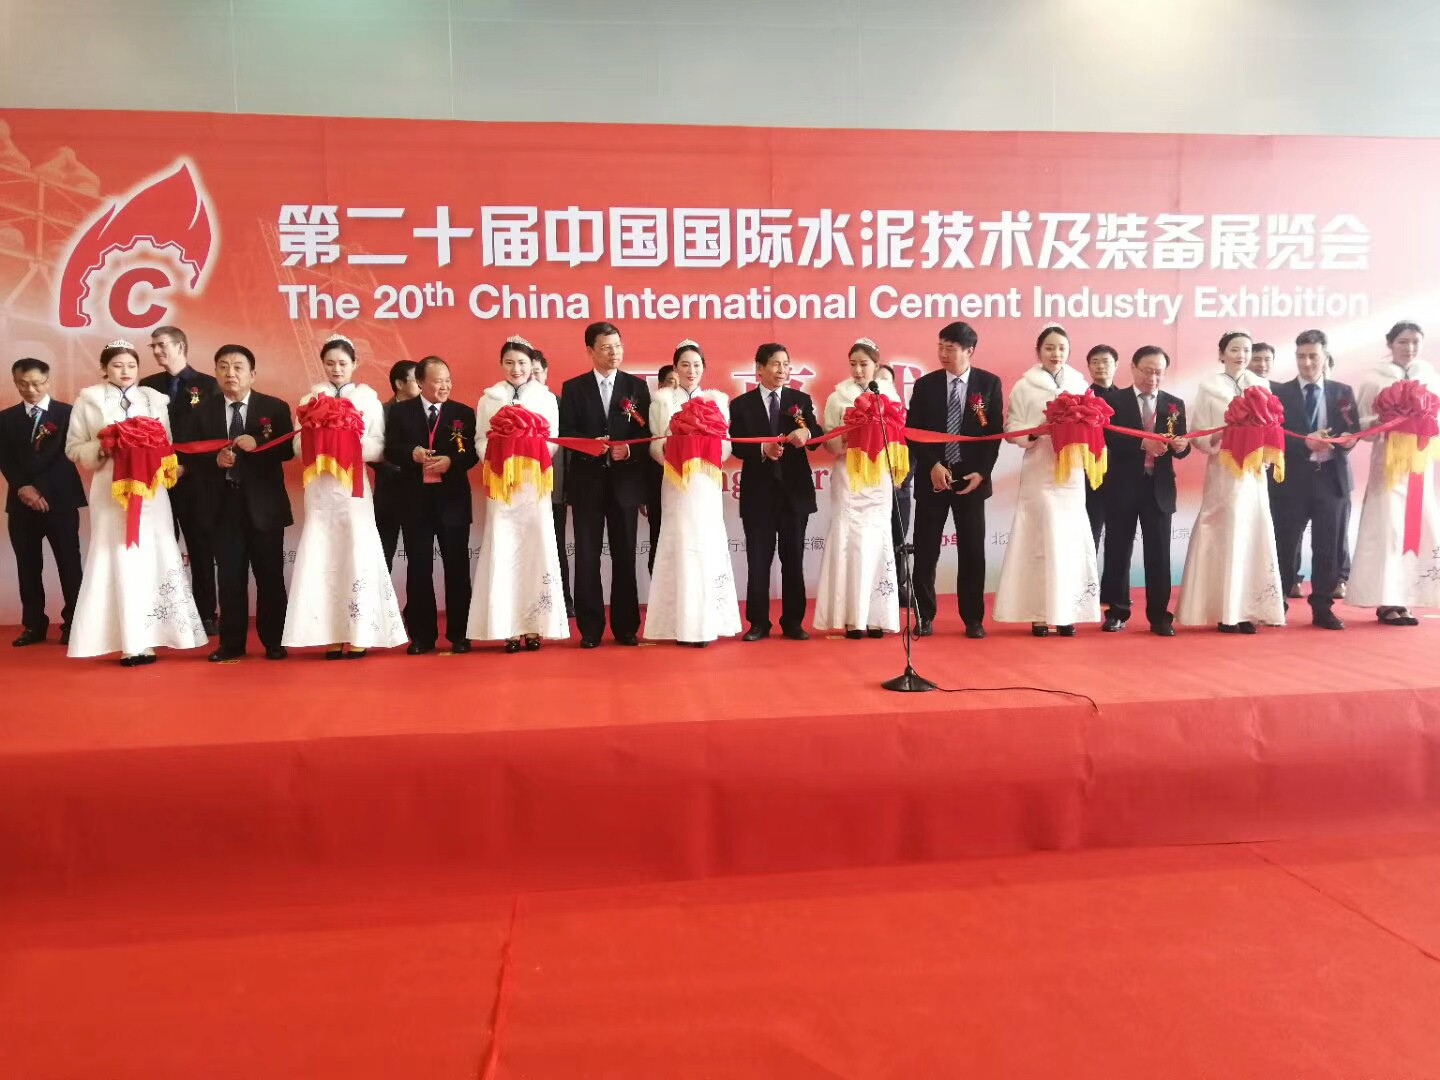 恩普特亮相第二十屆中國國際水泥技術及裝備展覽會